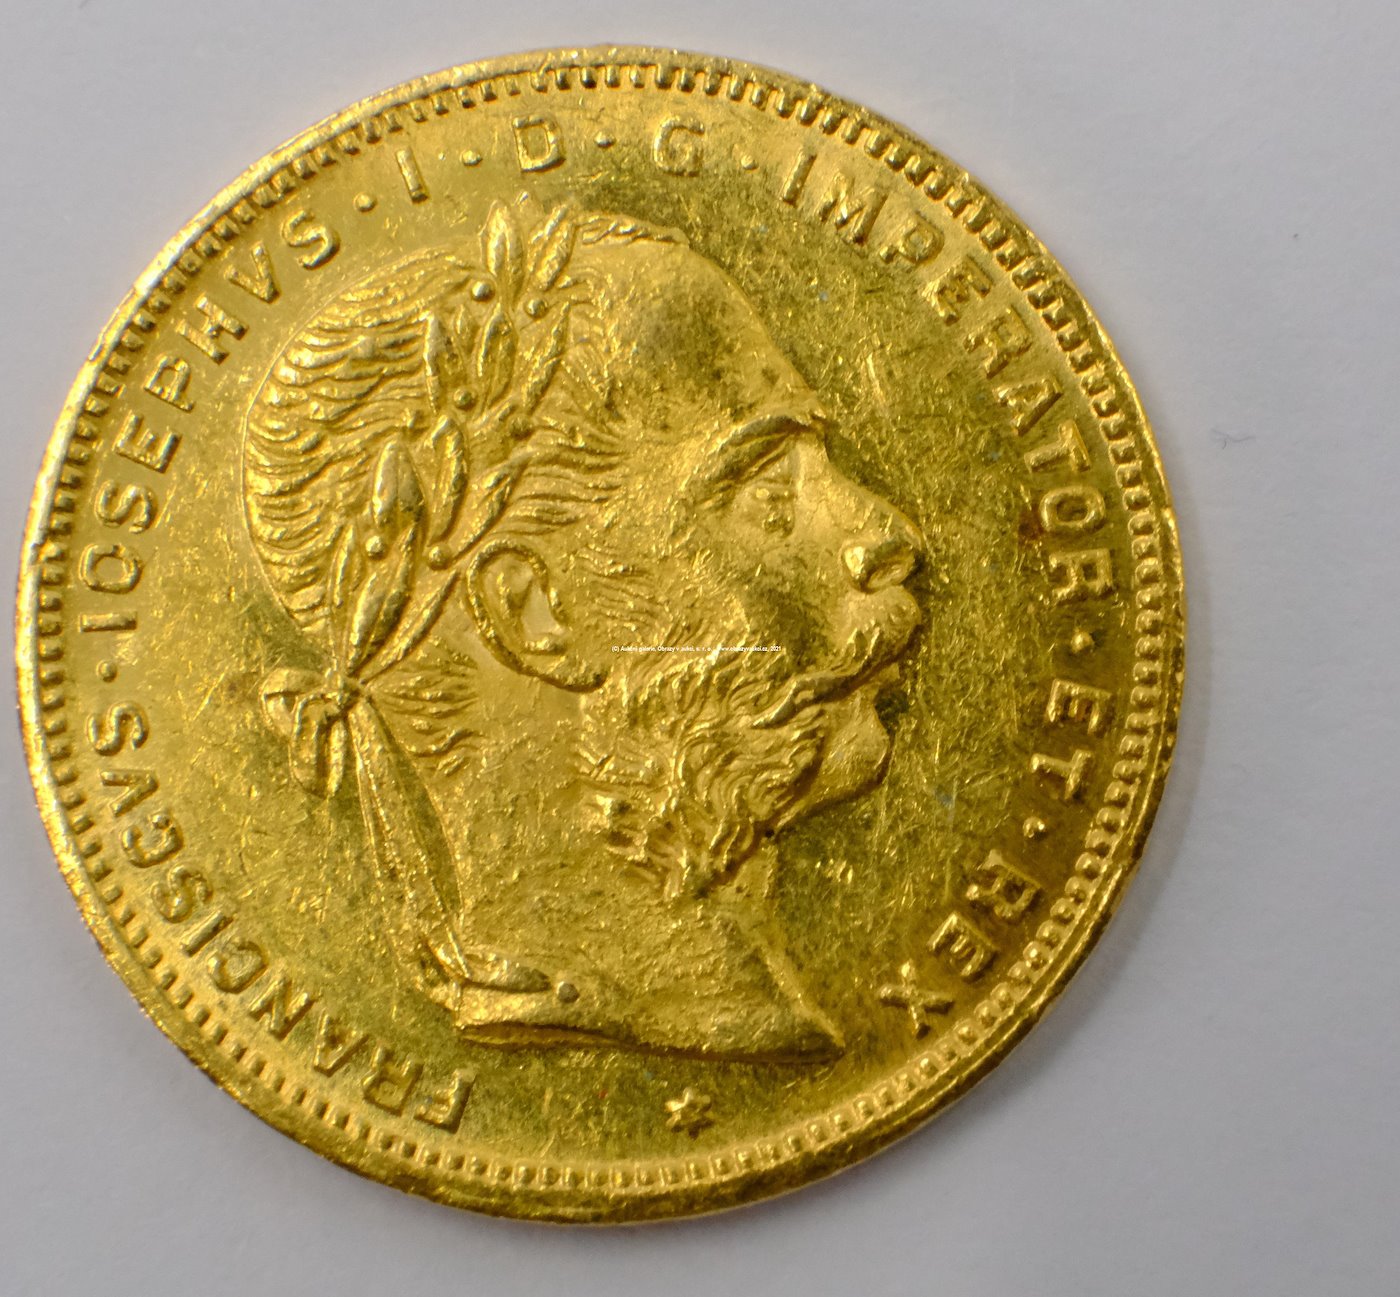 .. - Rakousko Uhersko zlatý 8 zlatník/20frank 1886 rakouský. Zlato 900/1000, hrubá hmotnost mince 6,452g